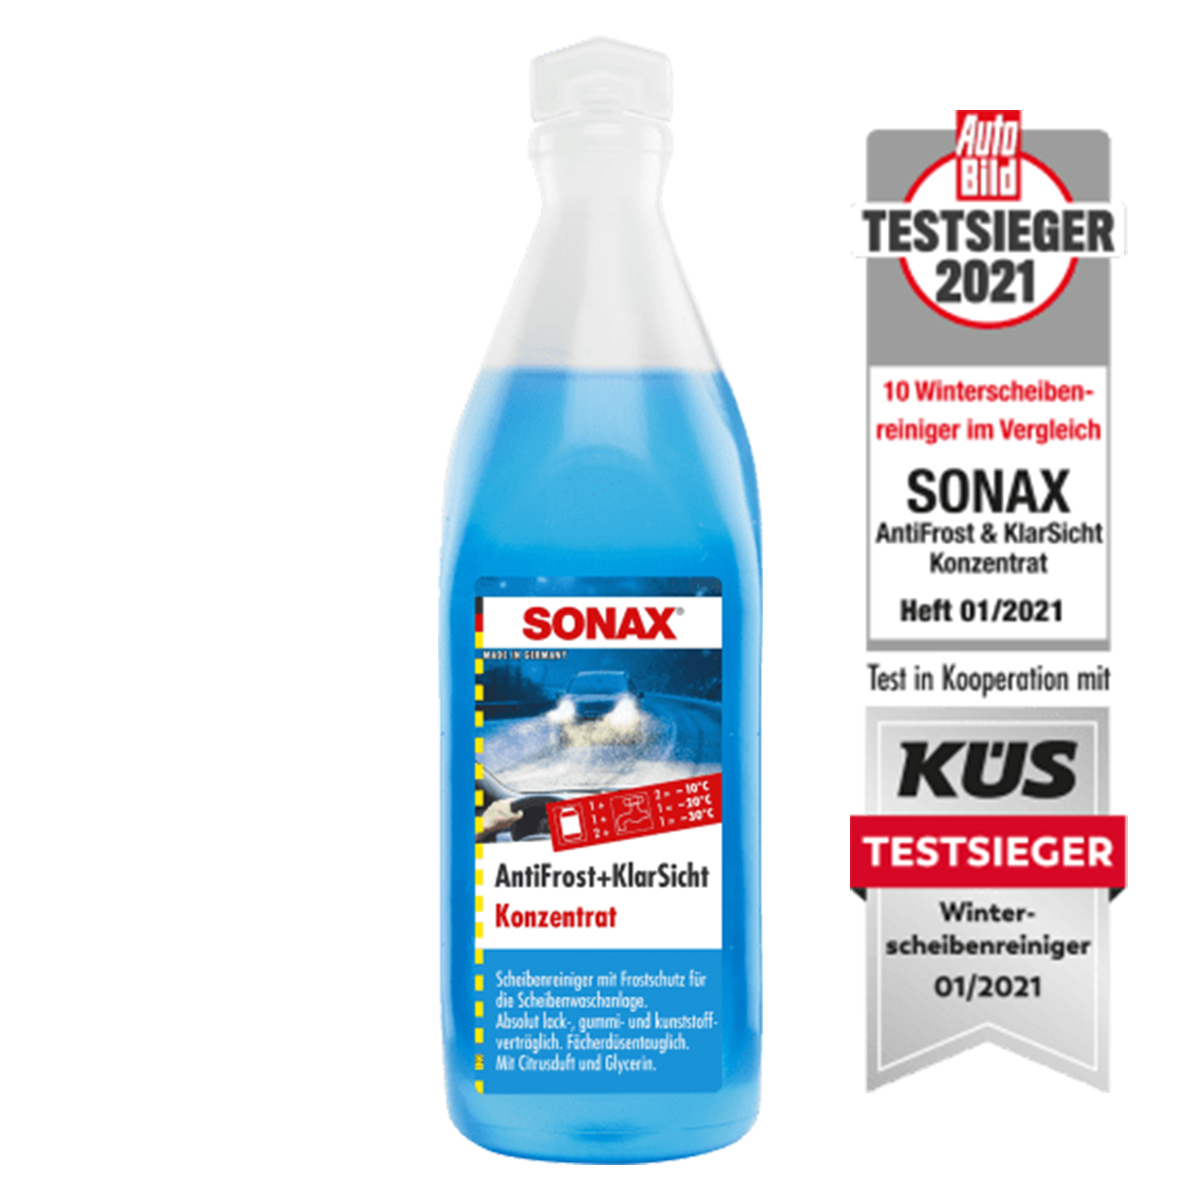 SONAX Antifrost- und KlarSicht Konzentrat, 332905, 200 Liter